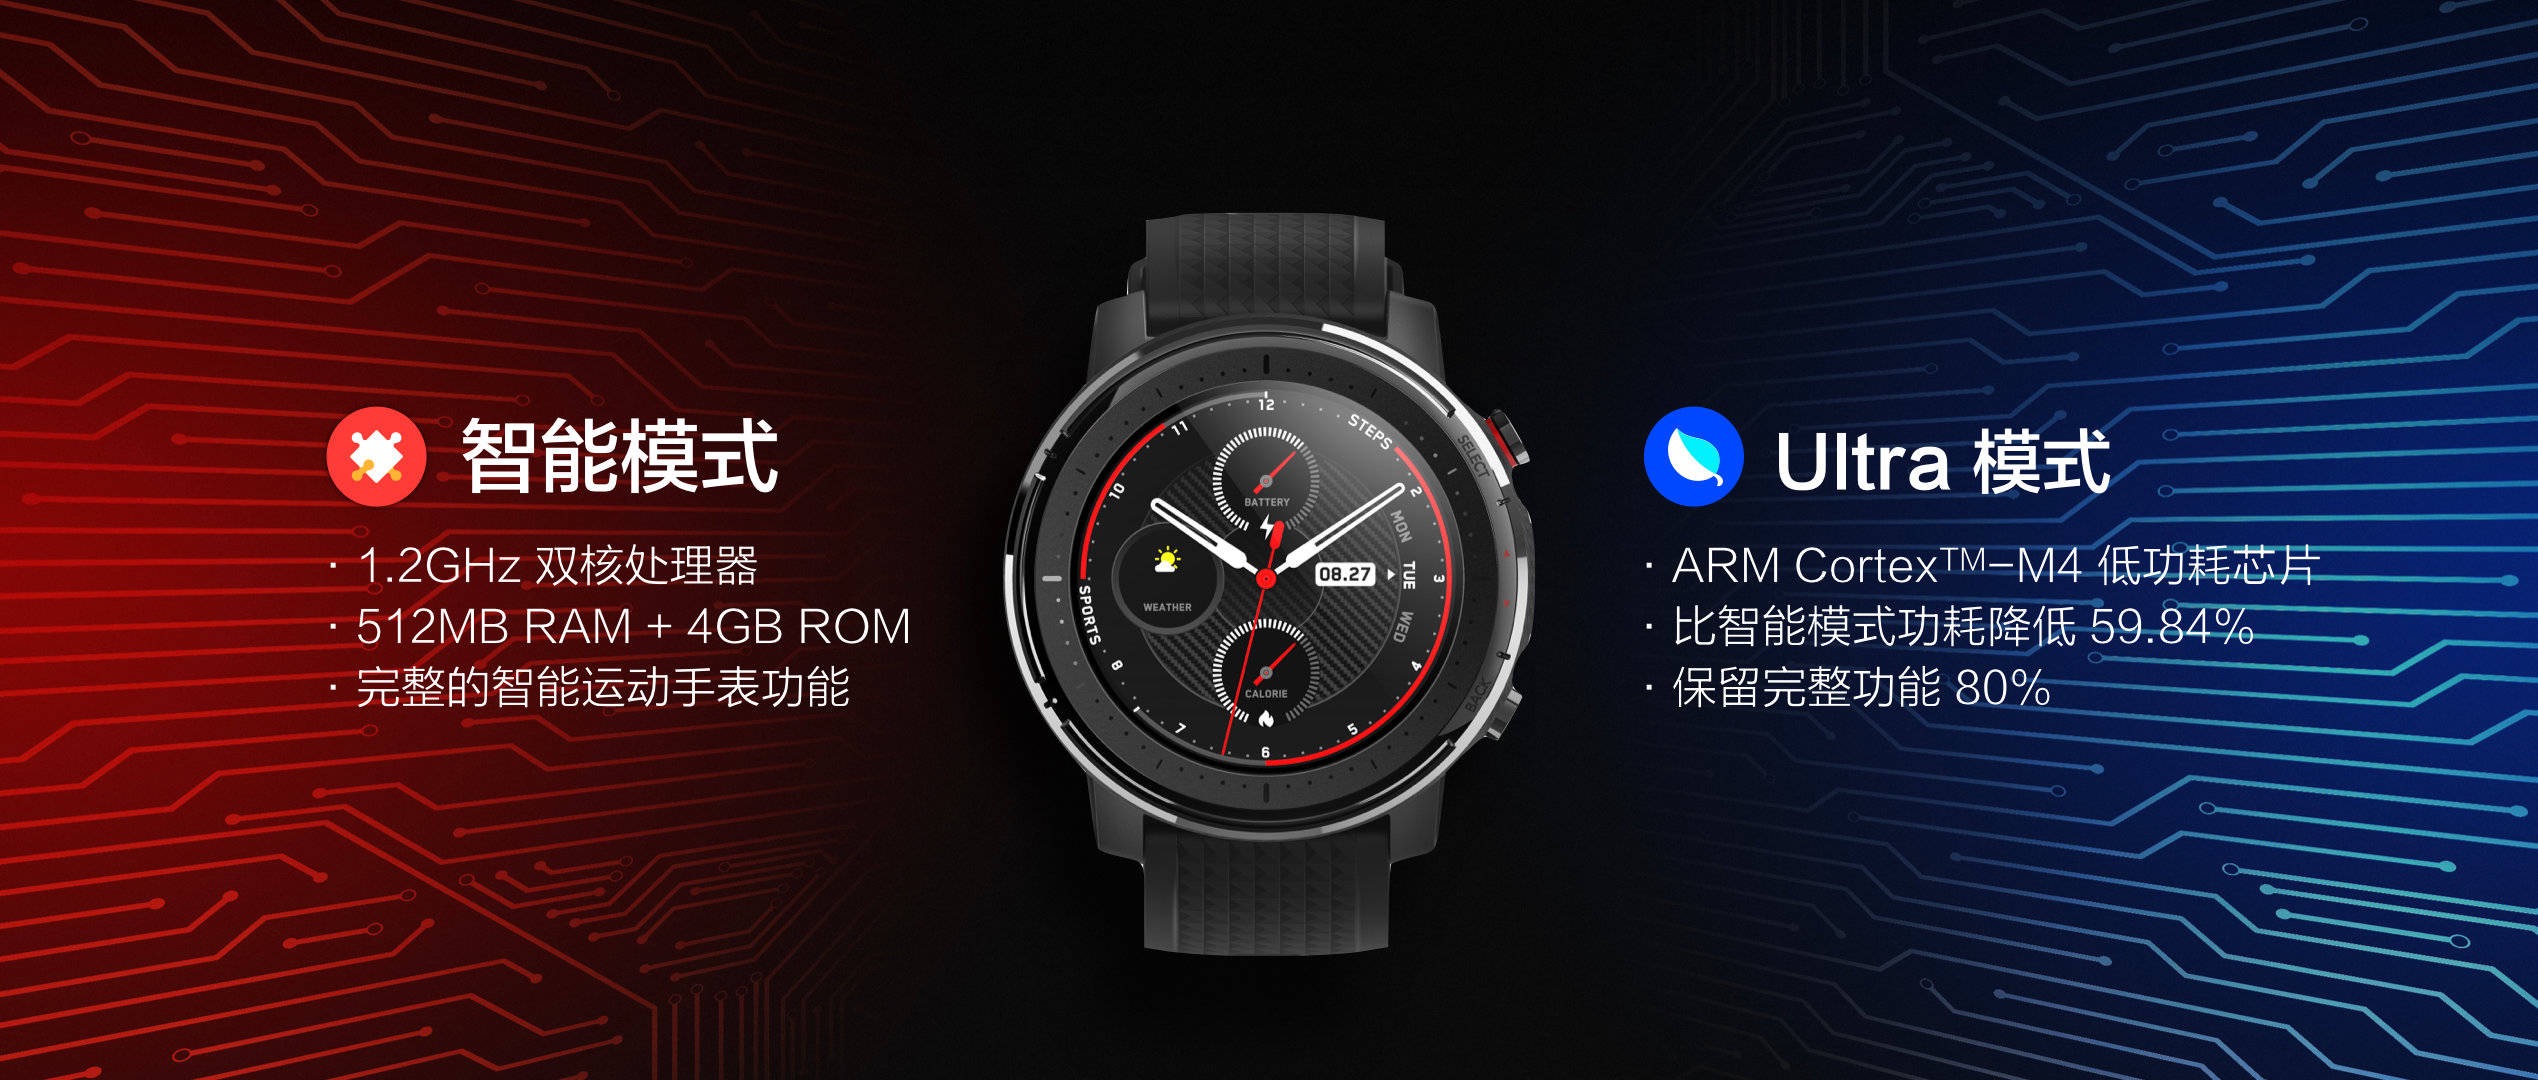 Amazfit Smart Sports Watch 3, funktioner, pris och specifikationer. Senaste nytt från Xiaomi